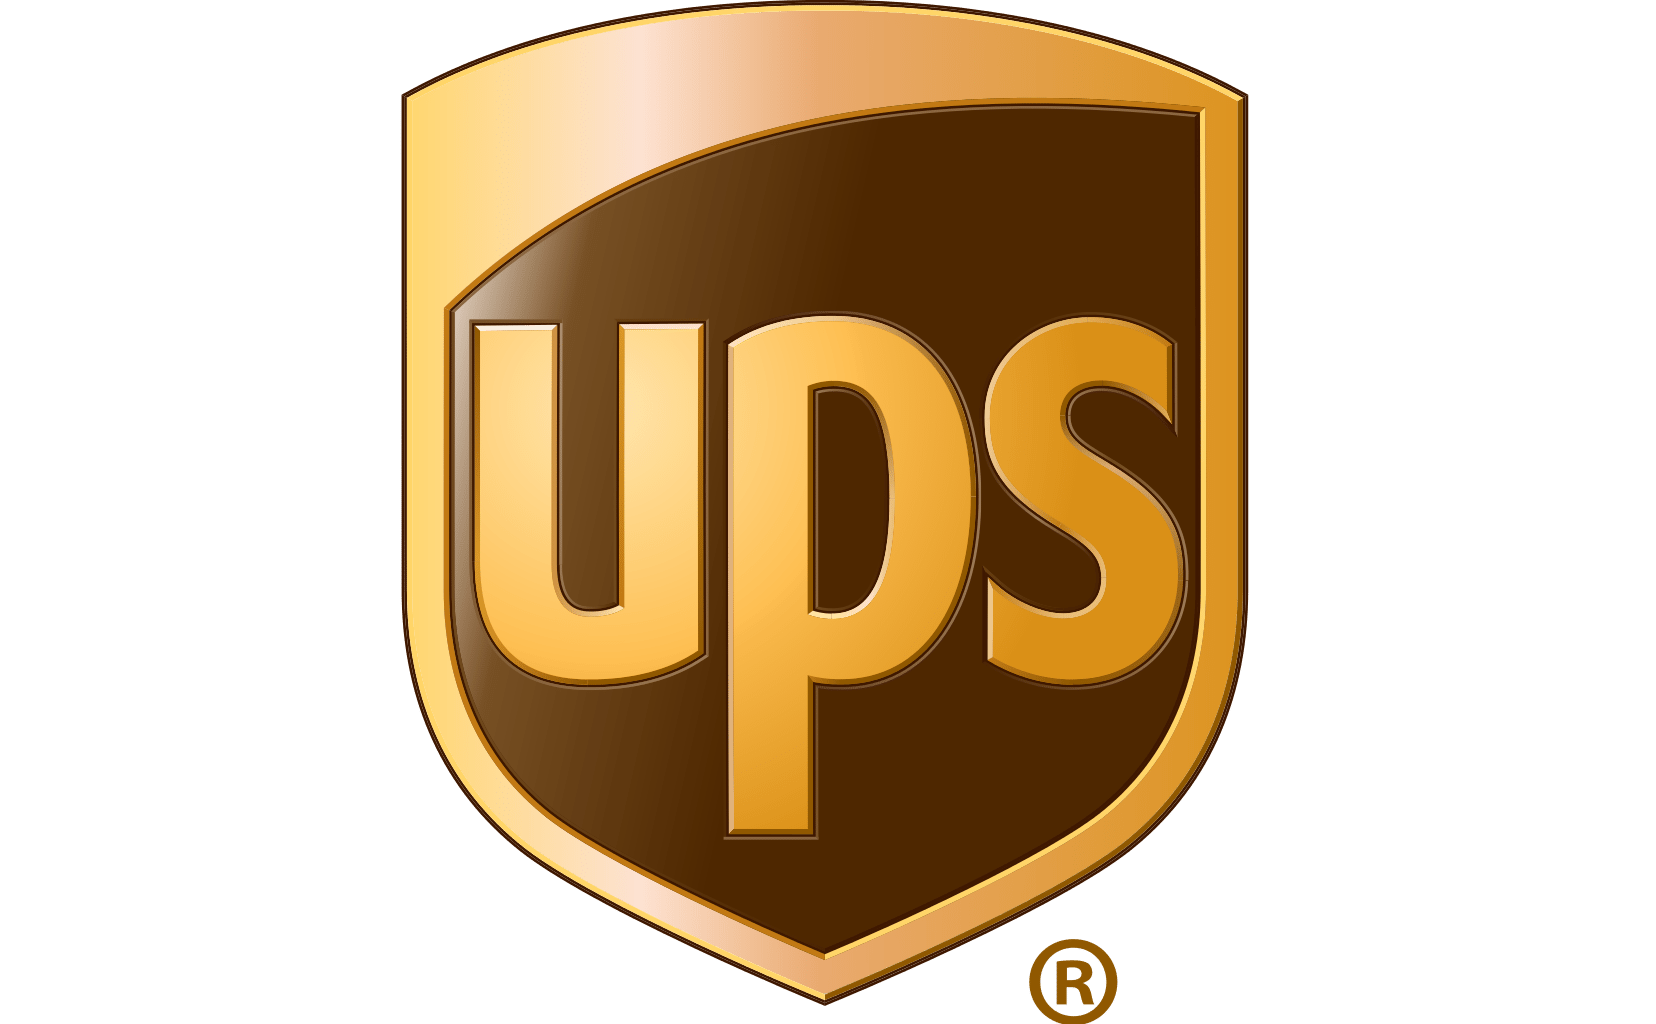 UPS_logo